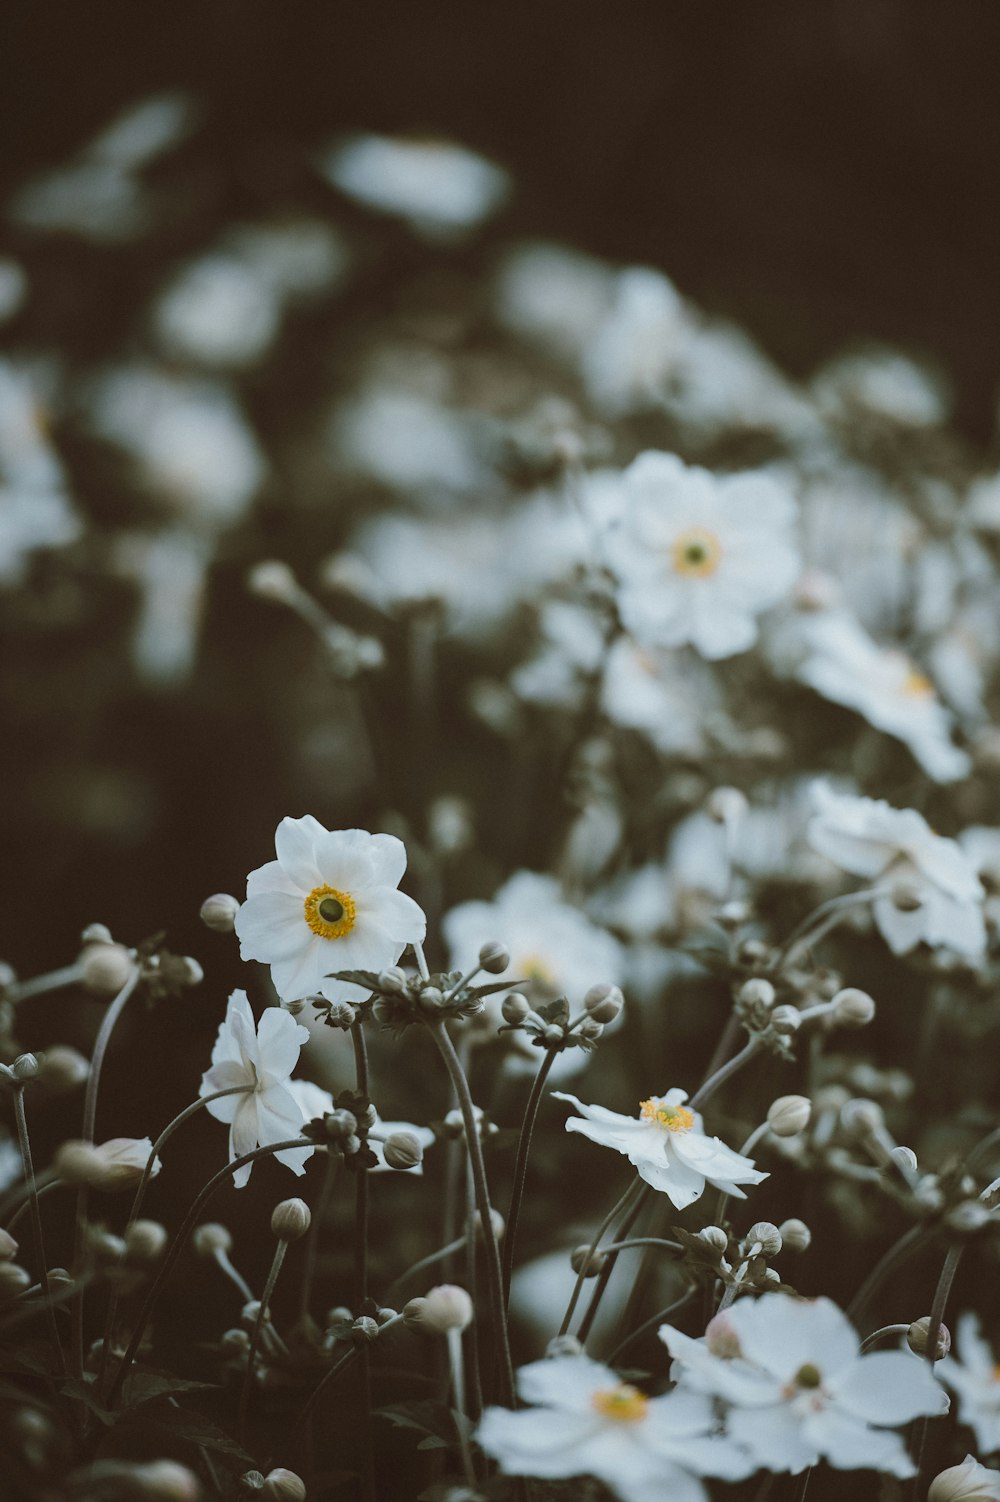 fotografia selettiva di fiori dai petali bianchi